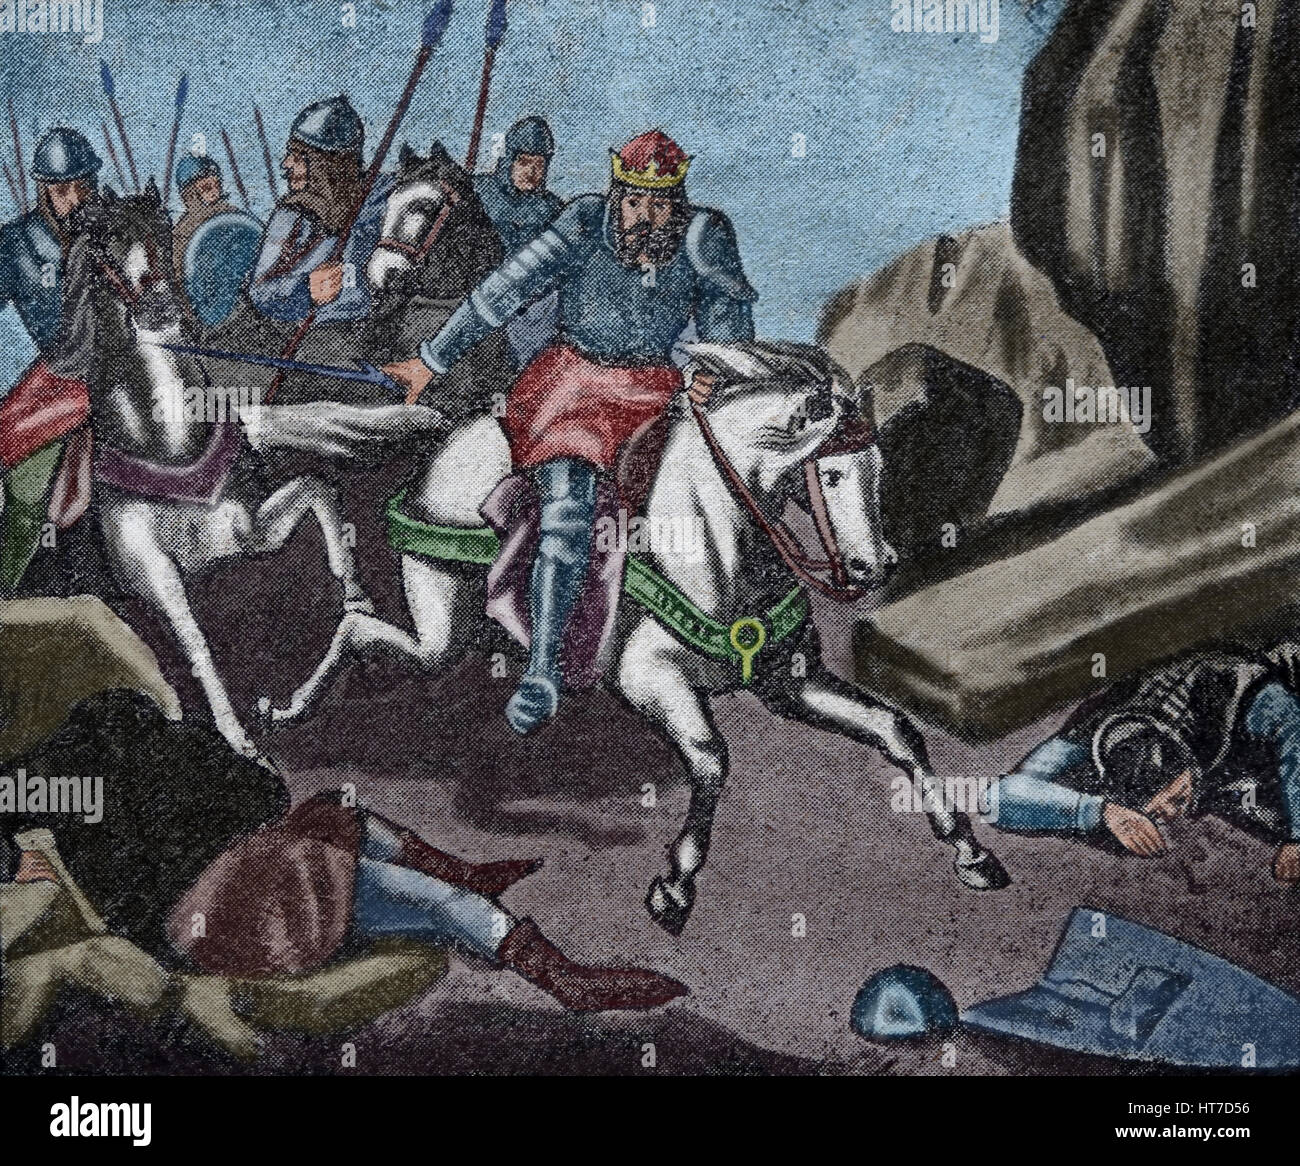 Batalla de Aljubarrota. 14 de agosto de 1385. Decisiva victoria portuguesa. Los beligerantes, Reino de Portugal y la Corona de Castilla. Grabado de grandeza de Foto de stock